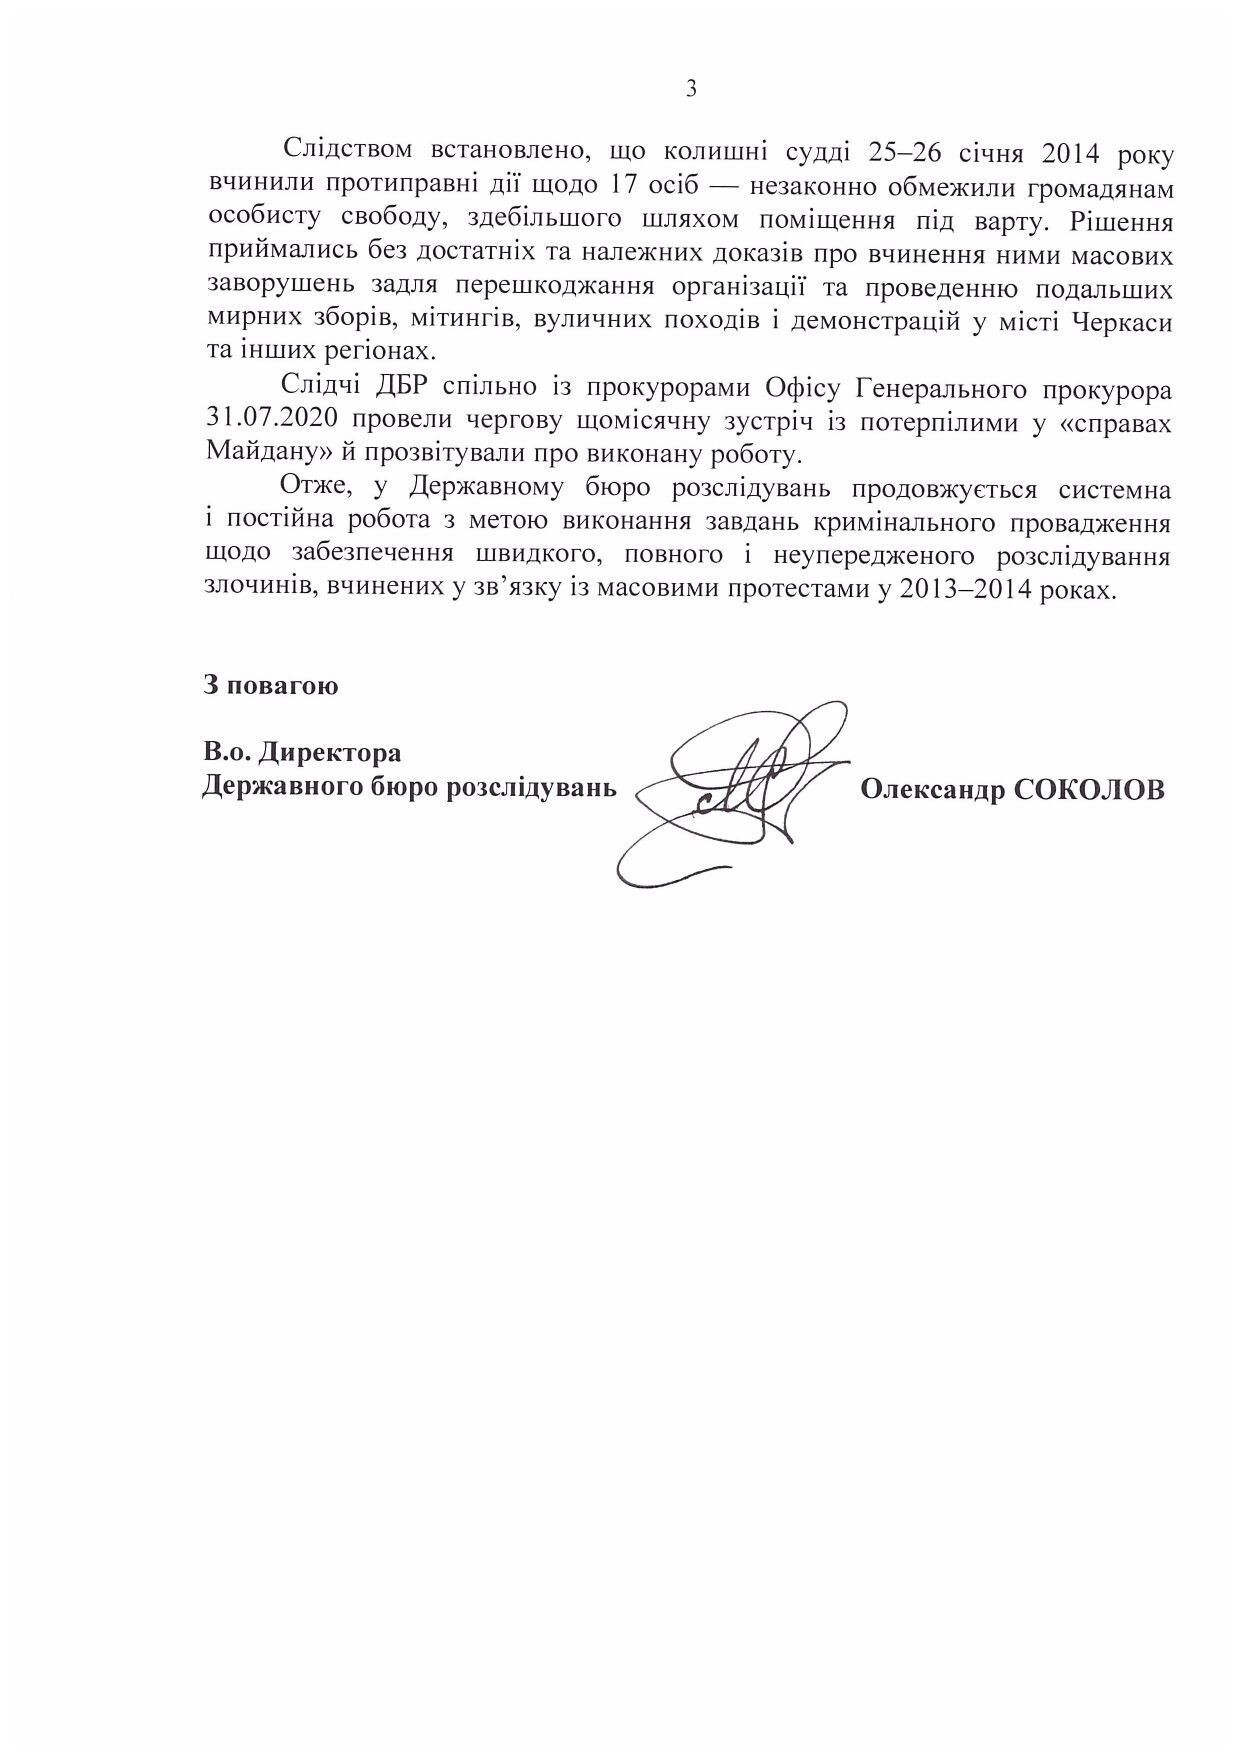 Звіт про розслідування справ «Майдану» за липень 2020 року